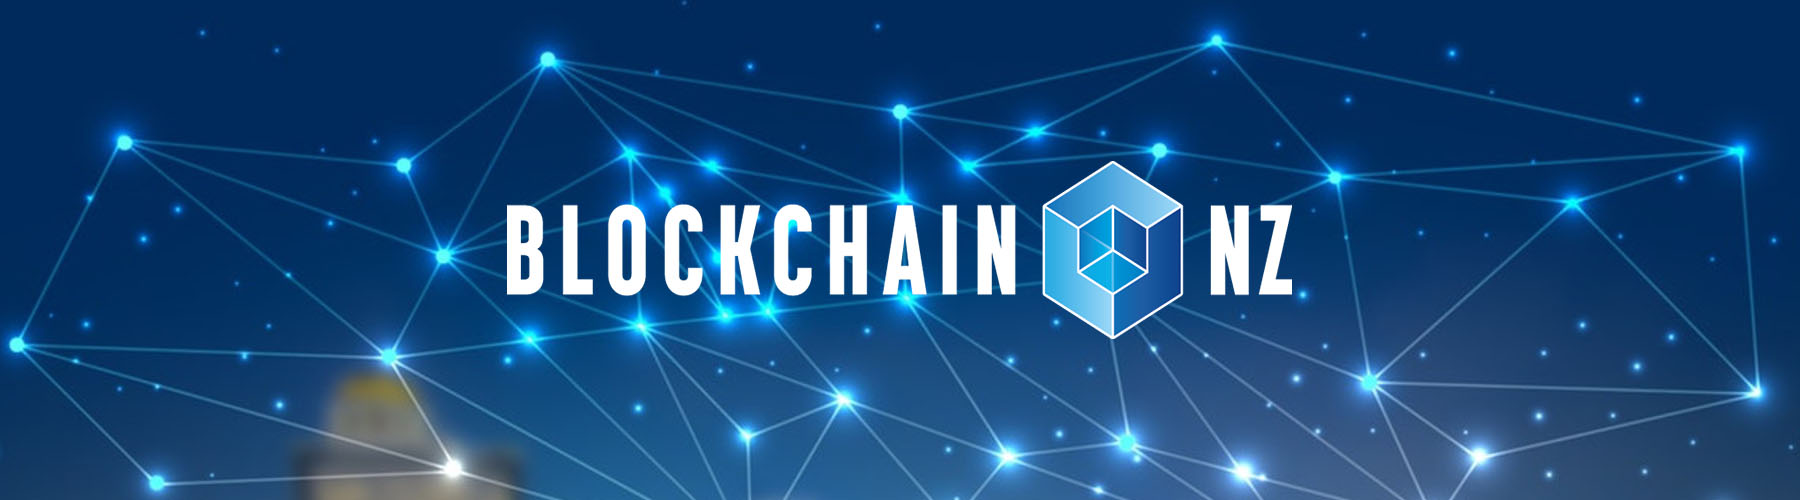 Blockchain Newsletter Header